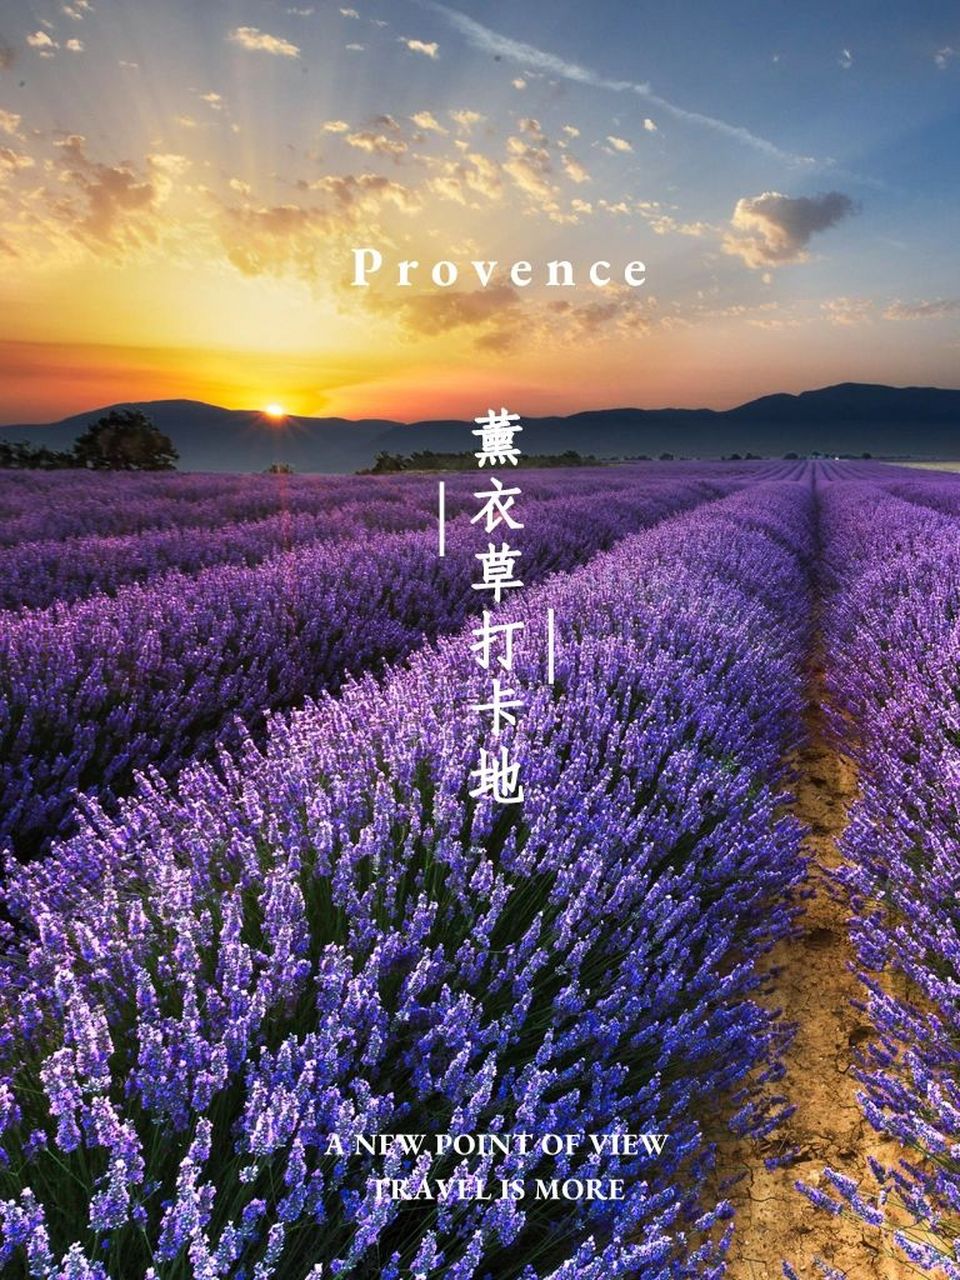 薰衣草 (lavender)的花94语是等待爱情,寓意着含蓄的示爱和坚定的